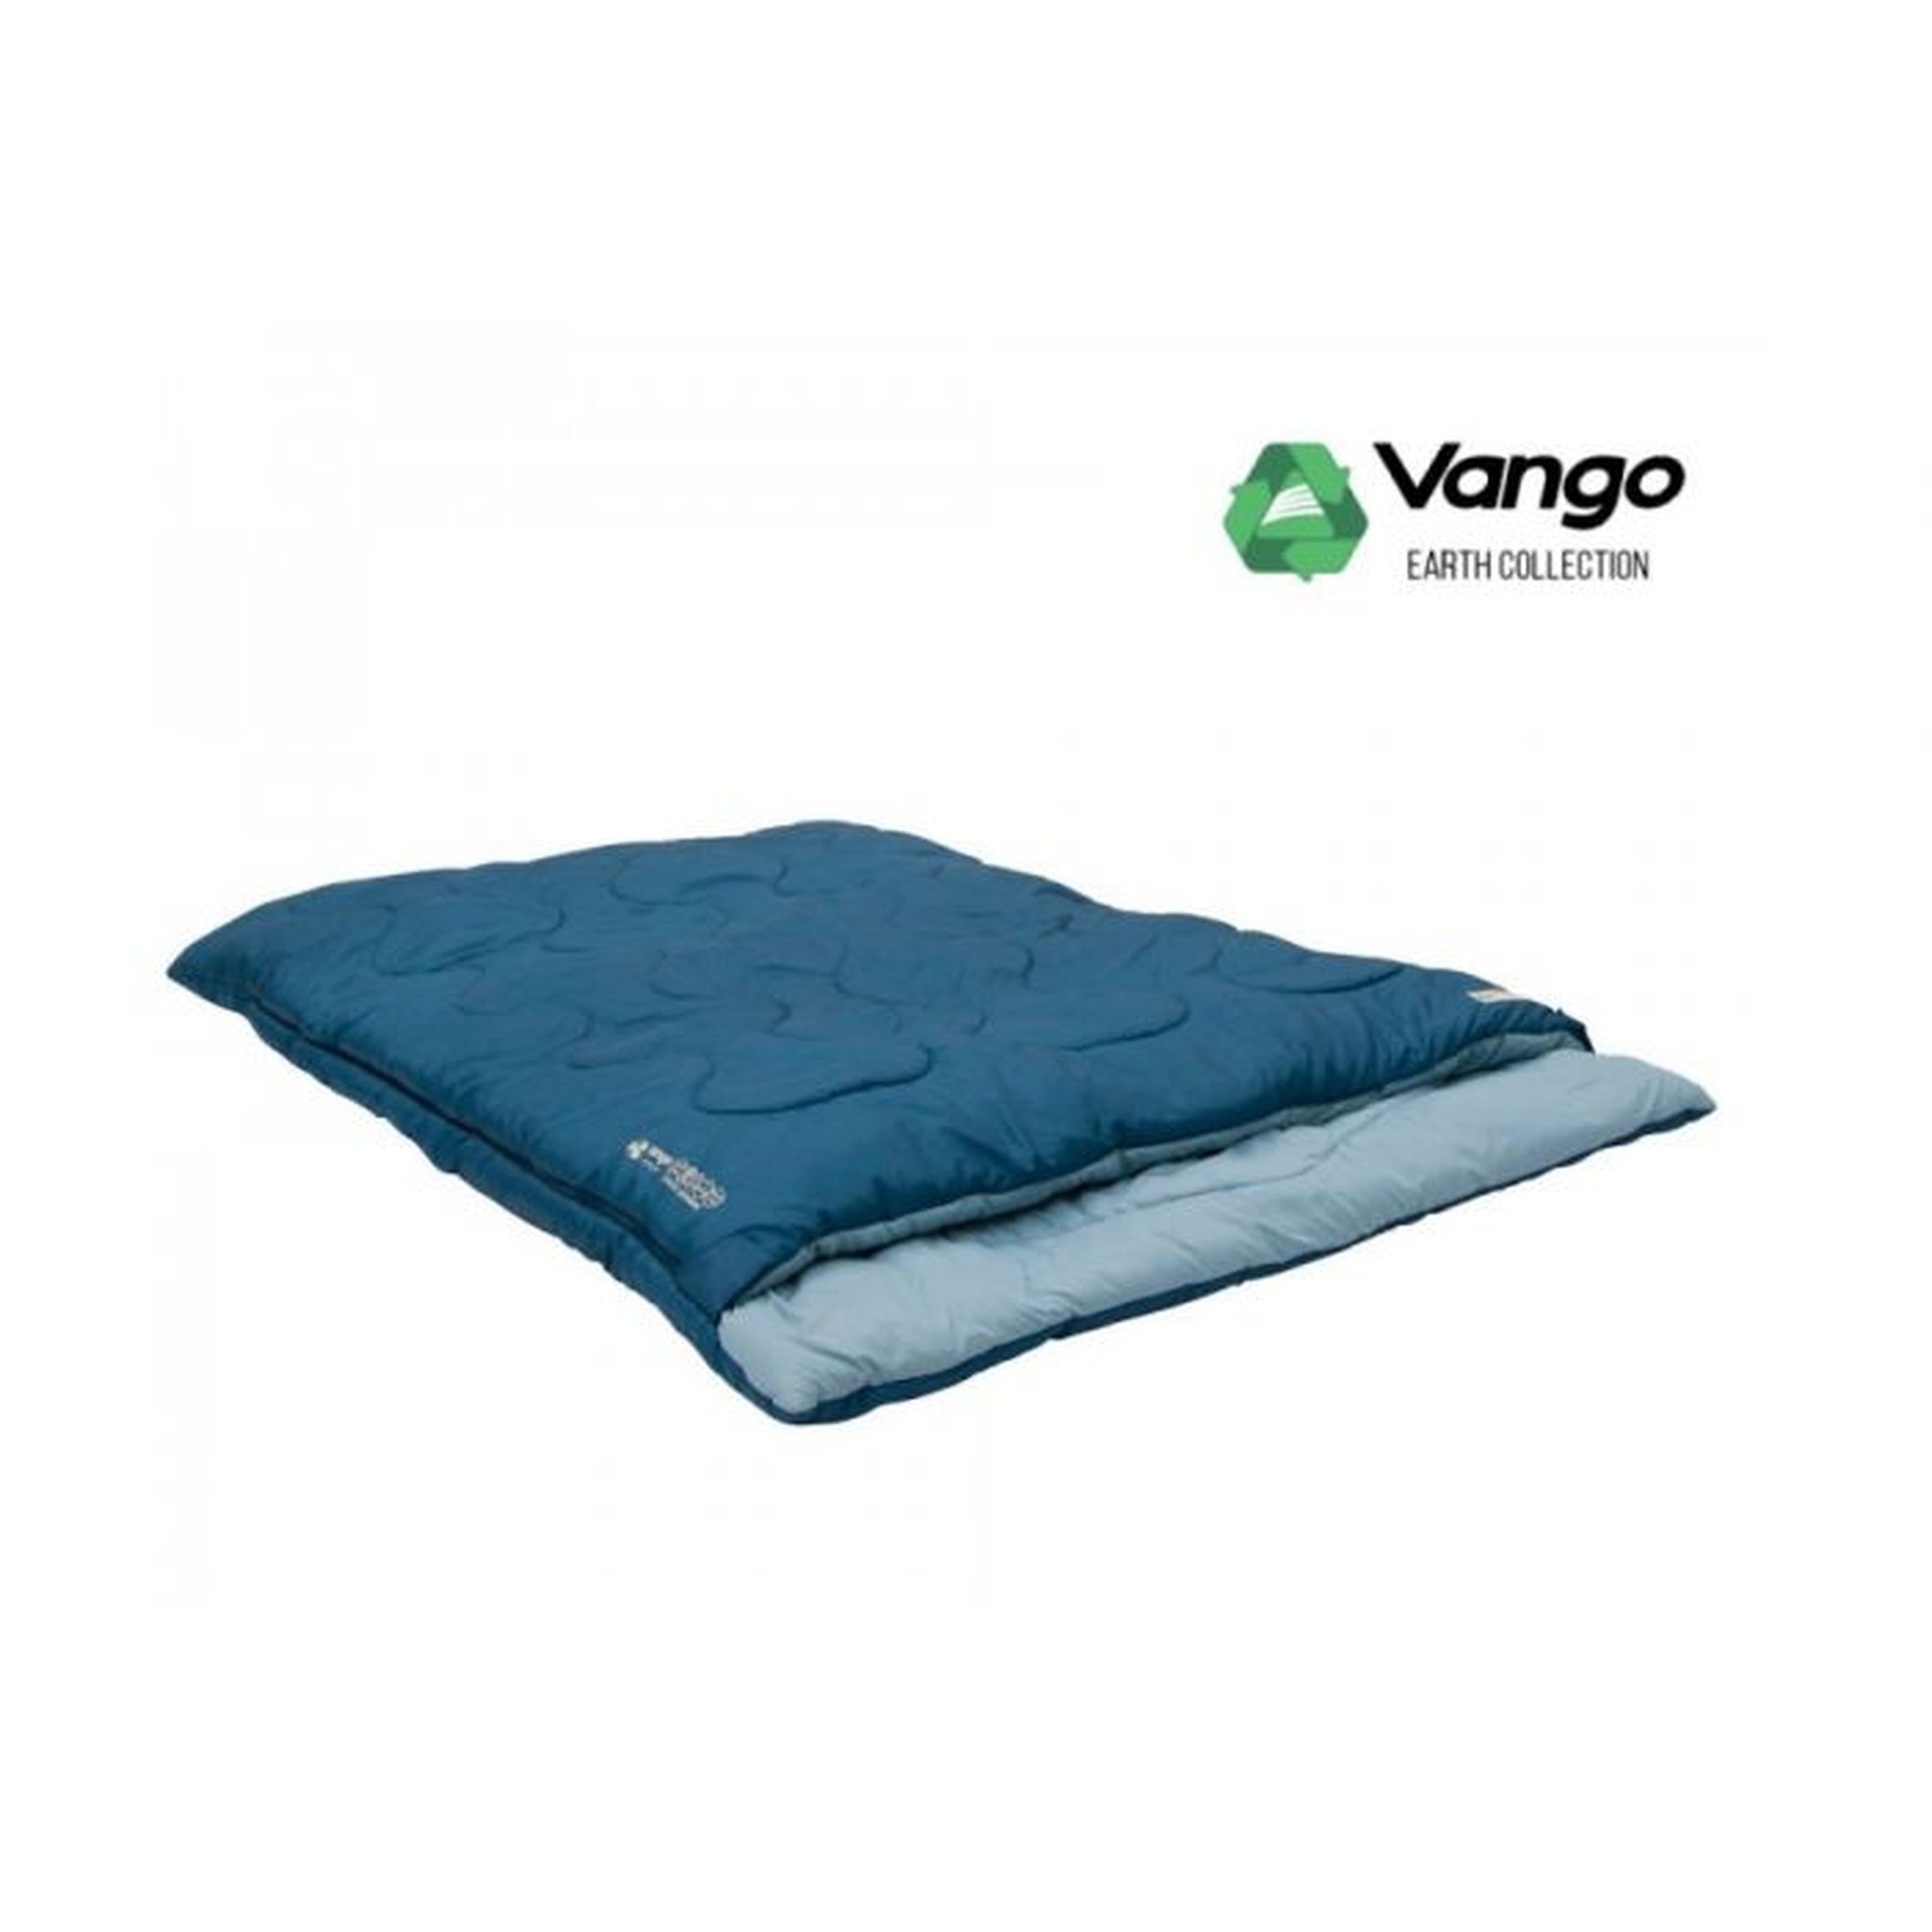 vango evolve double sleeping bag